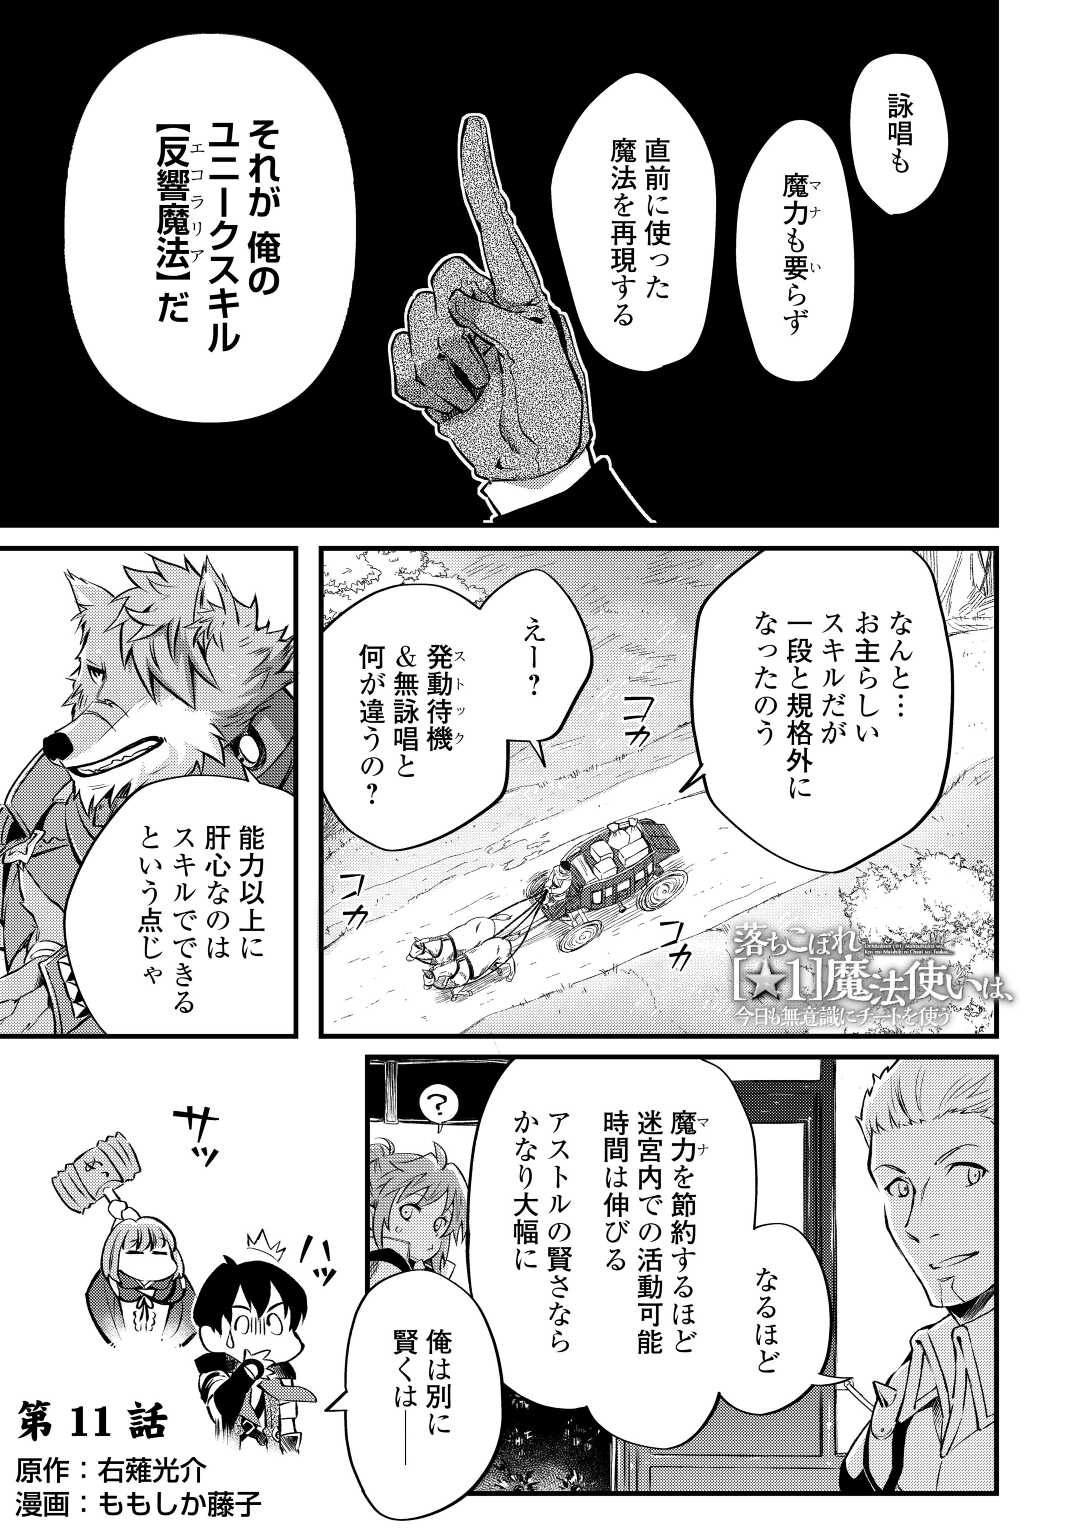 Ochikobore 1 Mahou Tsukai wa, Kyou mo Muishiki ni Cheat o Tsukau - Chapter 11 - Page 1